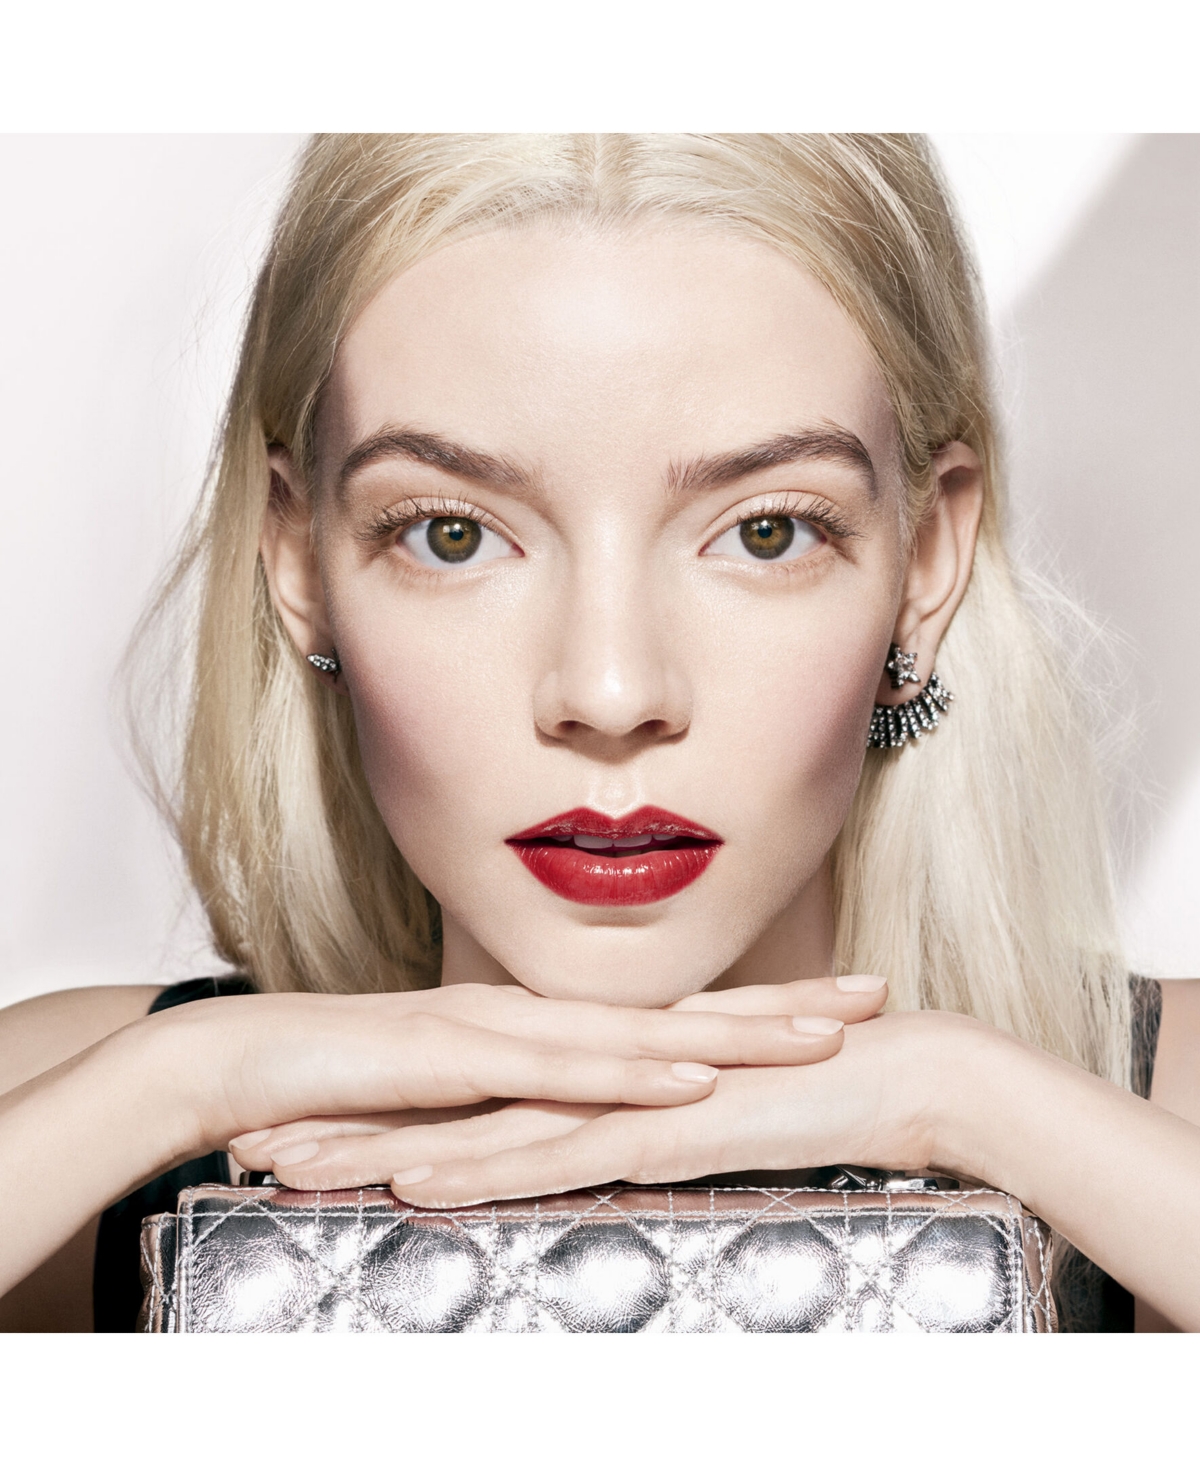 Shop Dior Addict Refillable Shine Lipstick In   (a Brick Red)